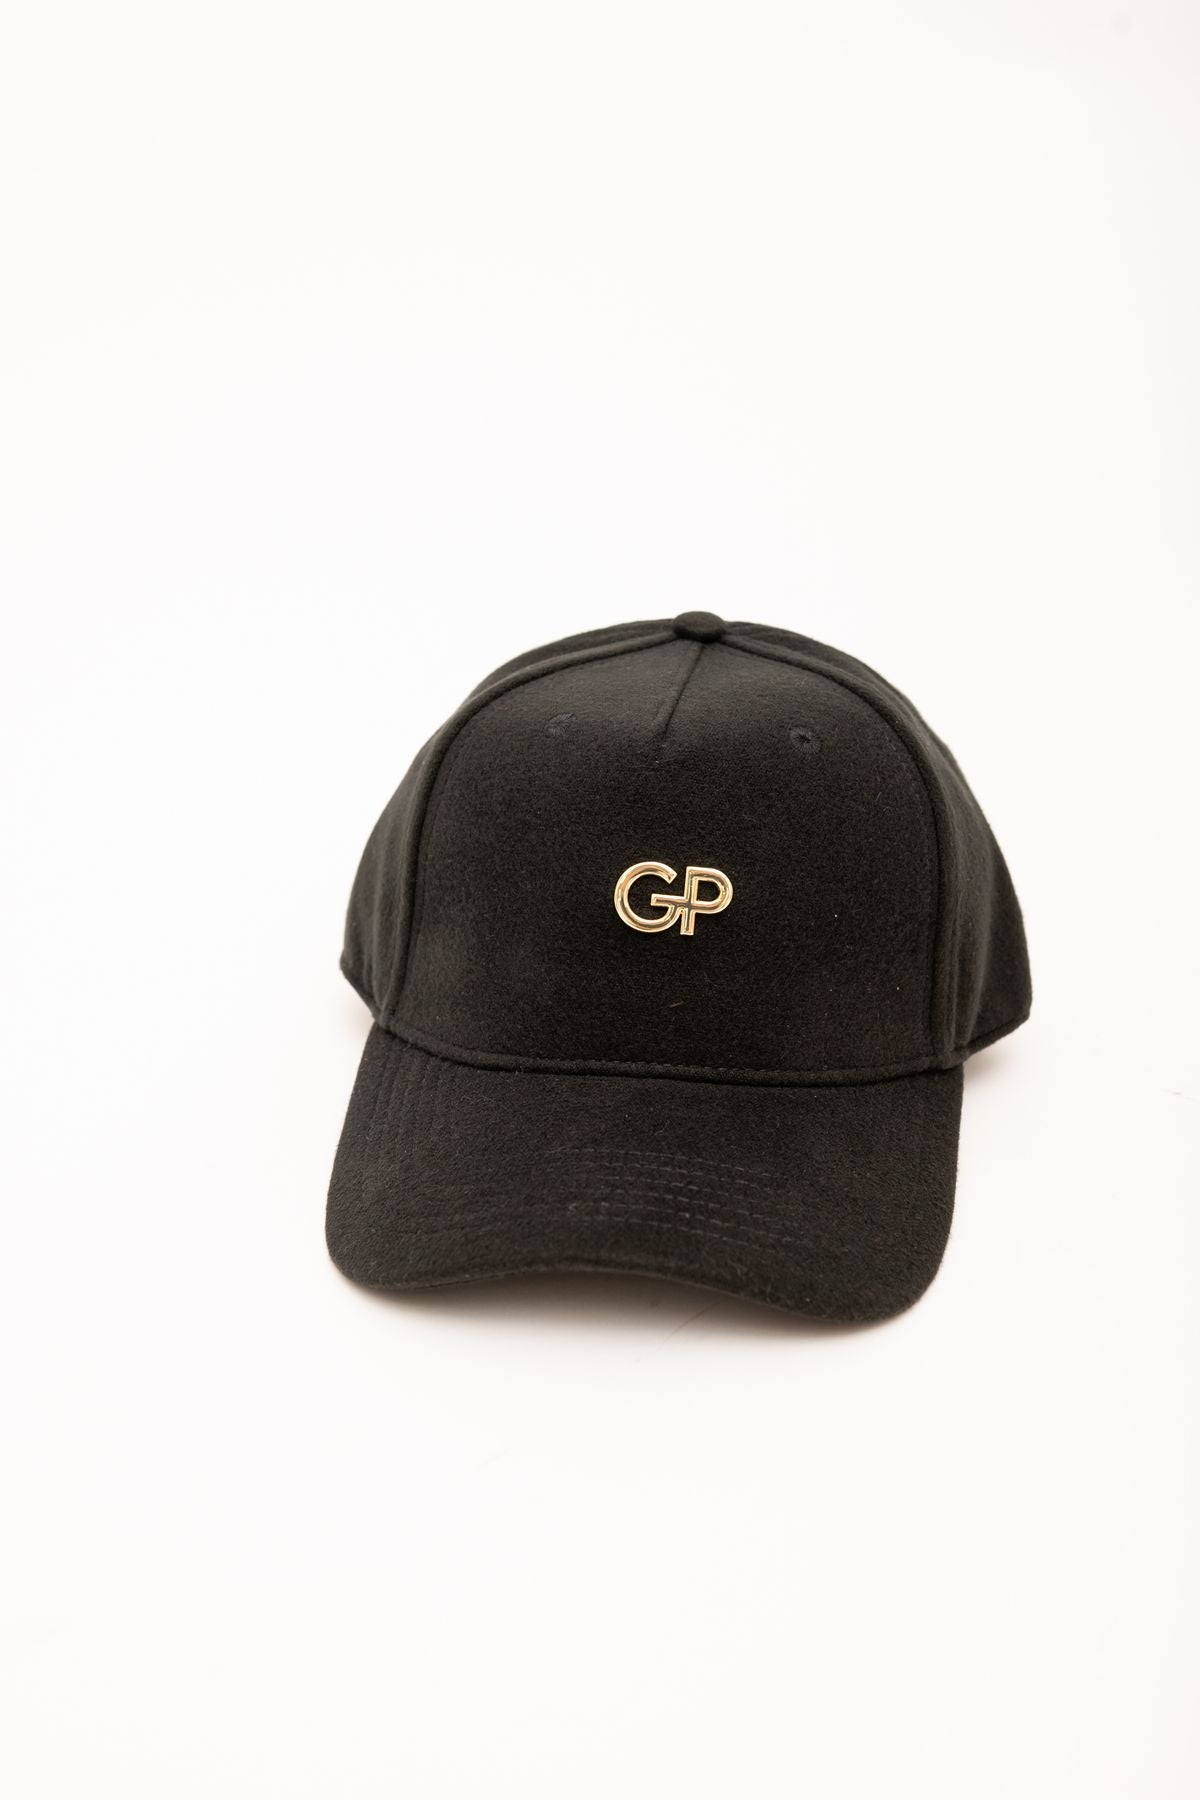 gbadp5009 - cappello - GAELLE PARIS